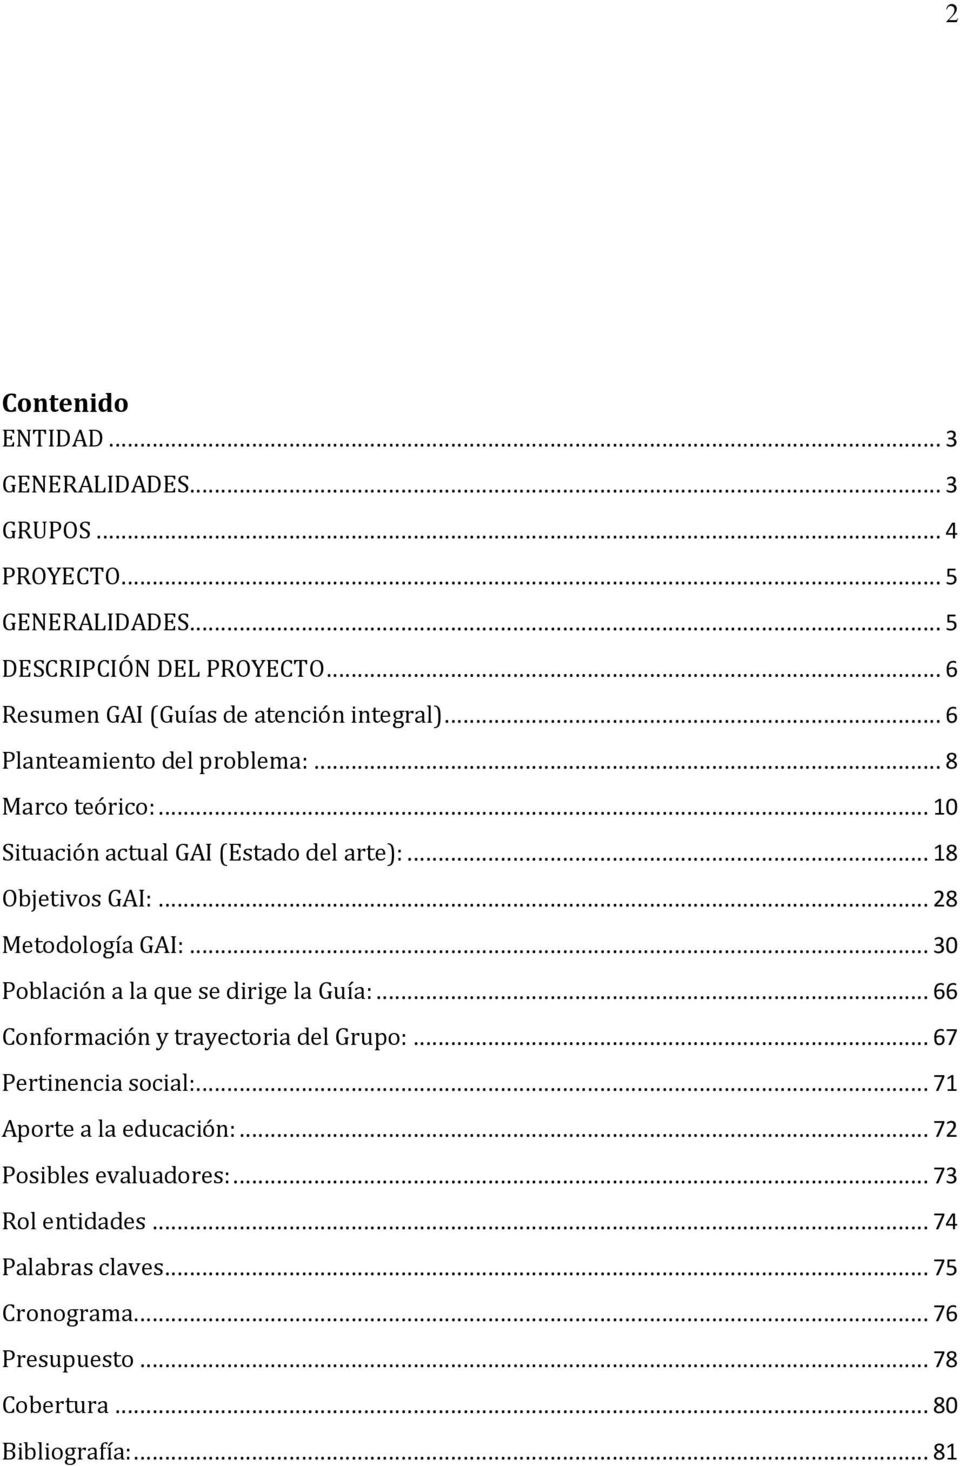 .. 18 Objetivos GAI:... 28 Metodología GAI:... 30 Población a la que se dirige la Guía:... 66 Conformación y trayectoria del Grupo:.